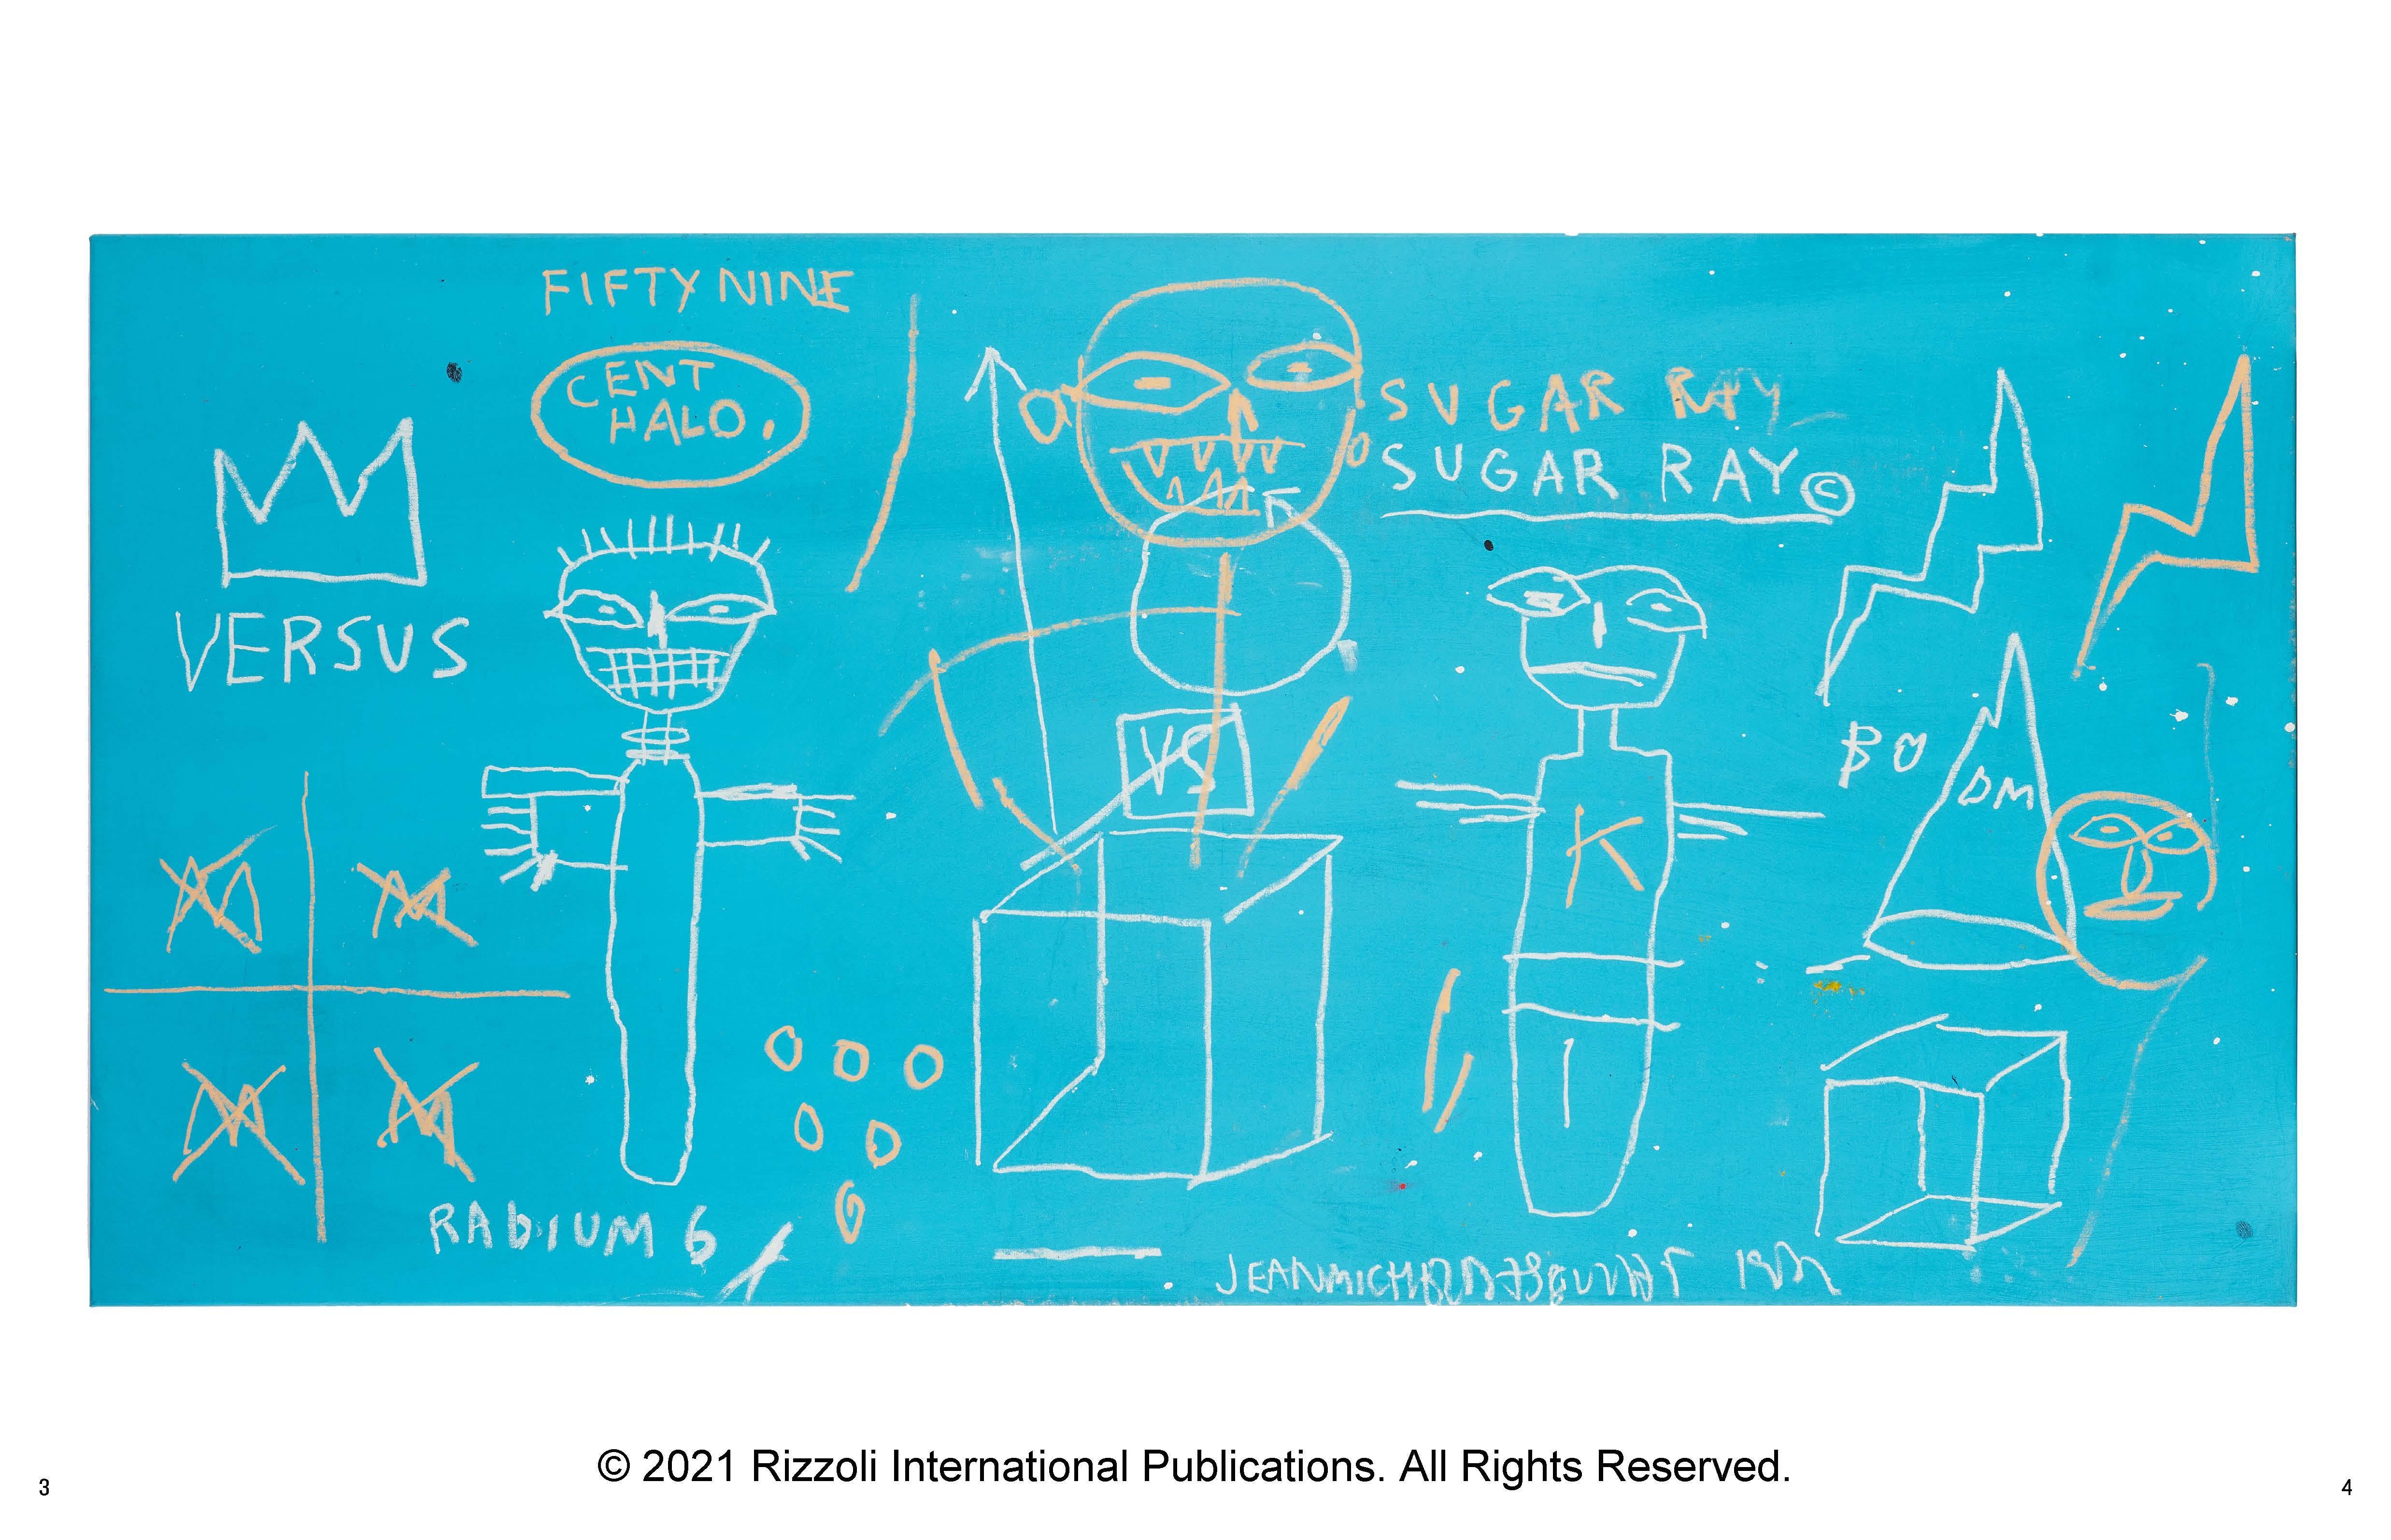 Jean-Michel Basquiat : Le plaisir du roi©
Texte de Lisane Basquiat et Jeanine Heriveaux et Nora Fitzpatrick et Ileen Gallagher

Ce volume historique raconte l'histoire de Jean-Michel Basquiat du point de vue intime de sa famille, entremêlant ses